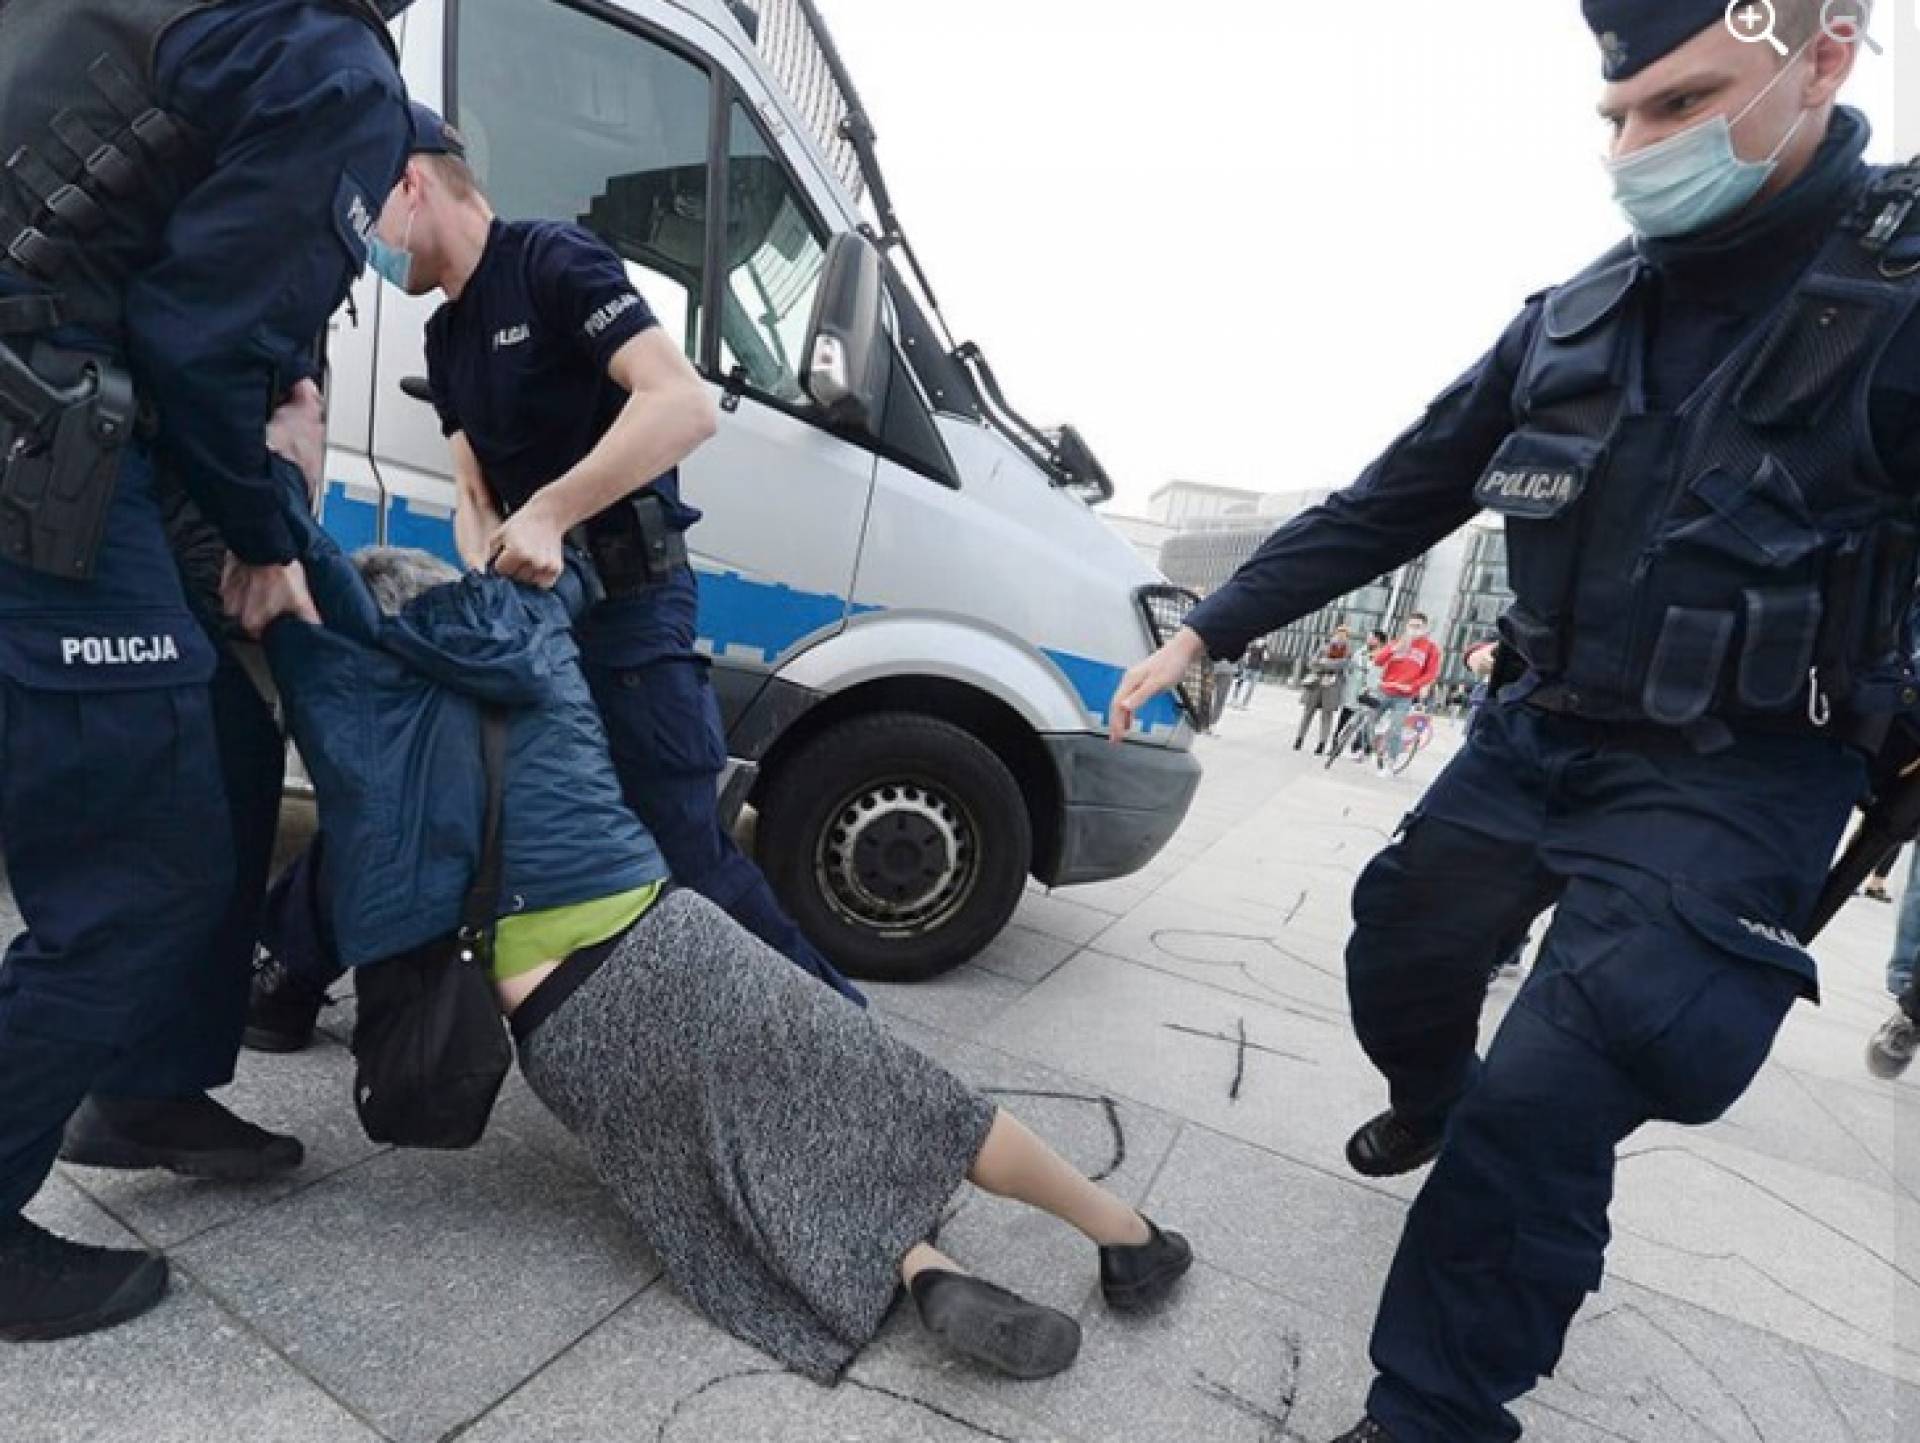 Krakowska radna: policja zajmuje się zastraszaniem ludzi niewygodnych dla władzy